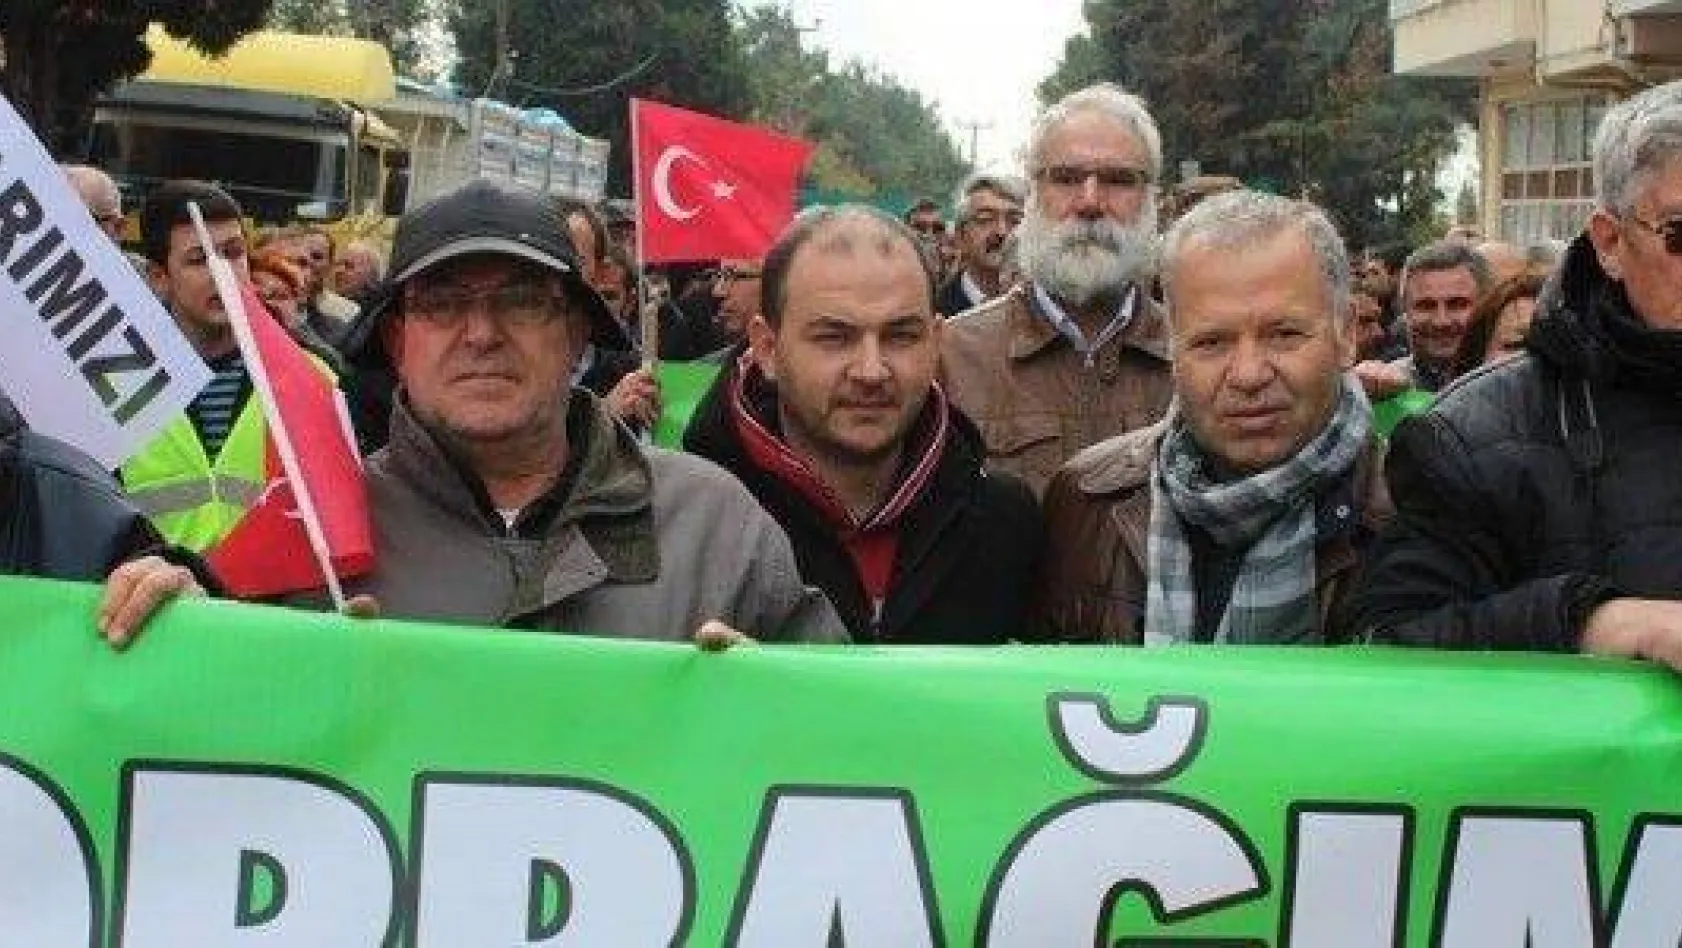 Lüleburgaz halkı: 'Meralar köylünündür şirketlere kiralanamaz'